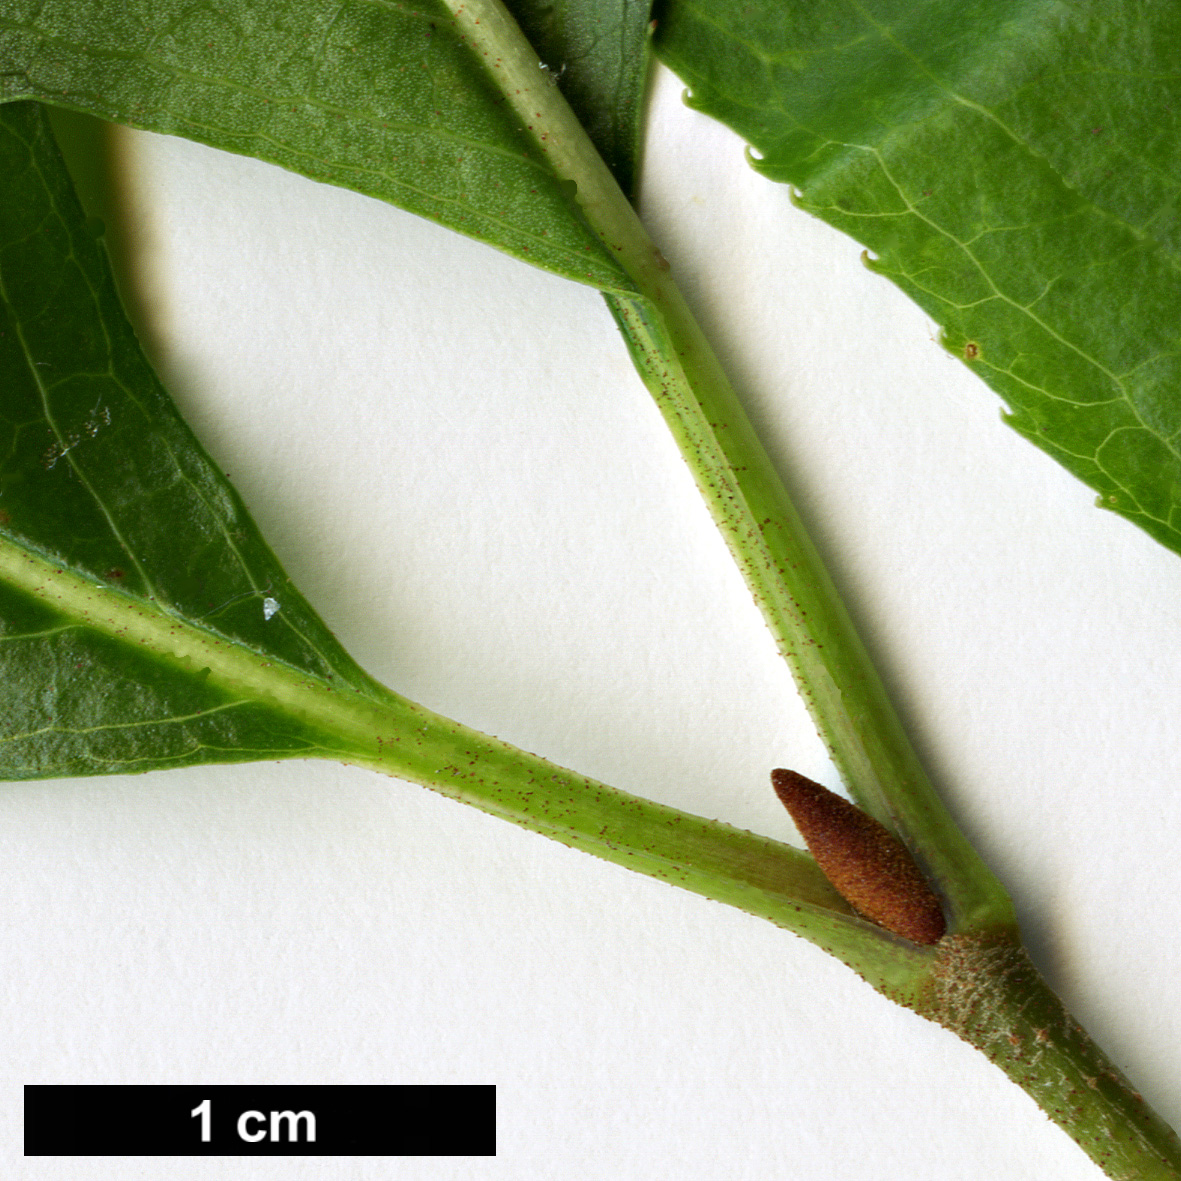 High resolution image: Family: Adoxaceae - Genus: Viburnum - Taxon: rufidulum